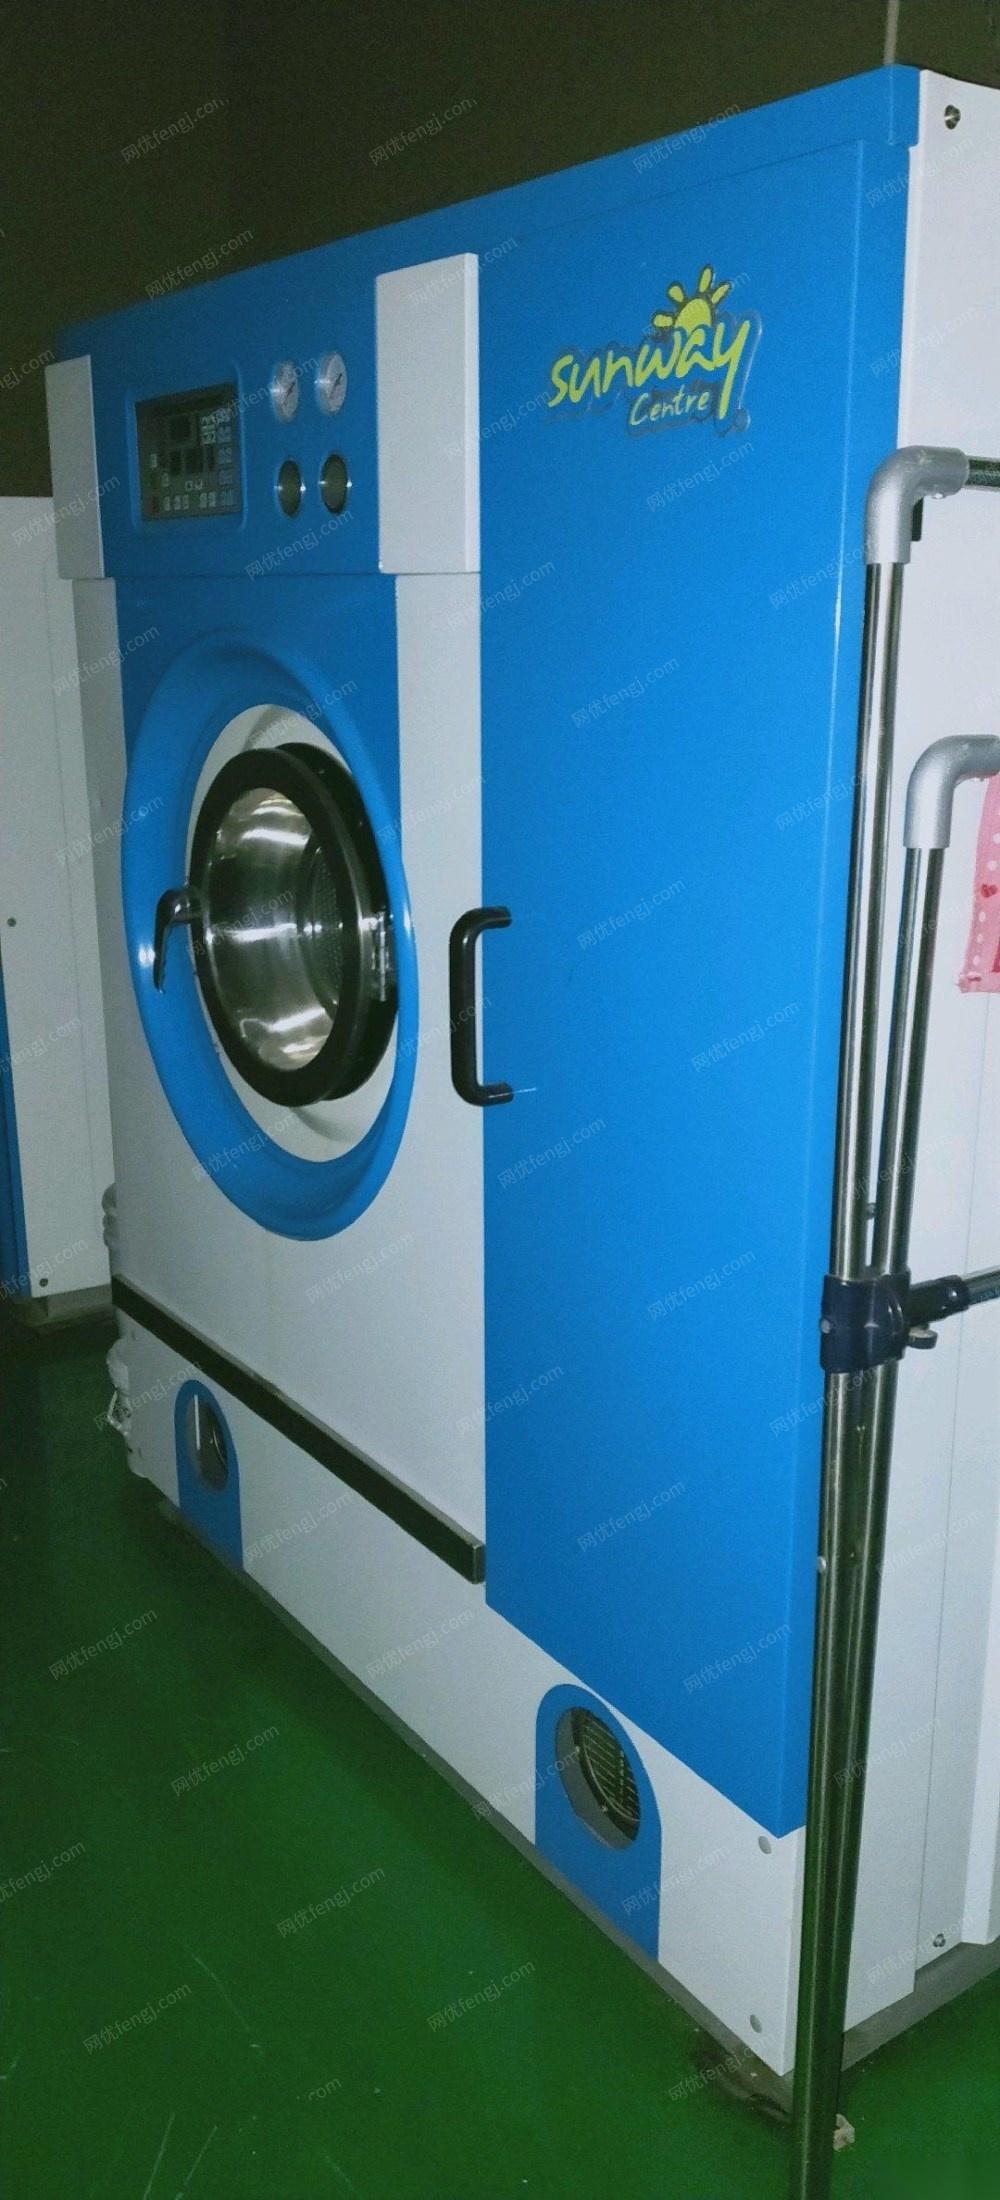 重庆渝北区整套干洗店设备低价出售 15000元